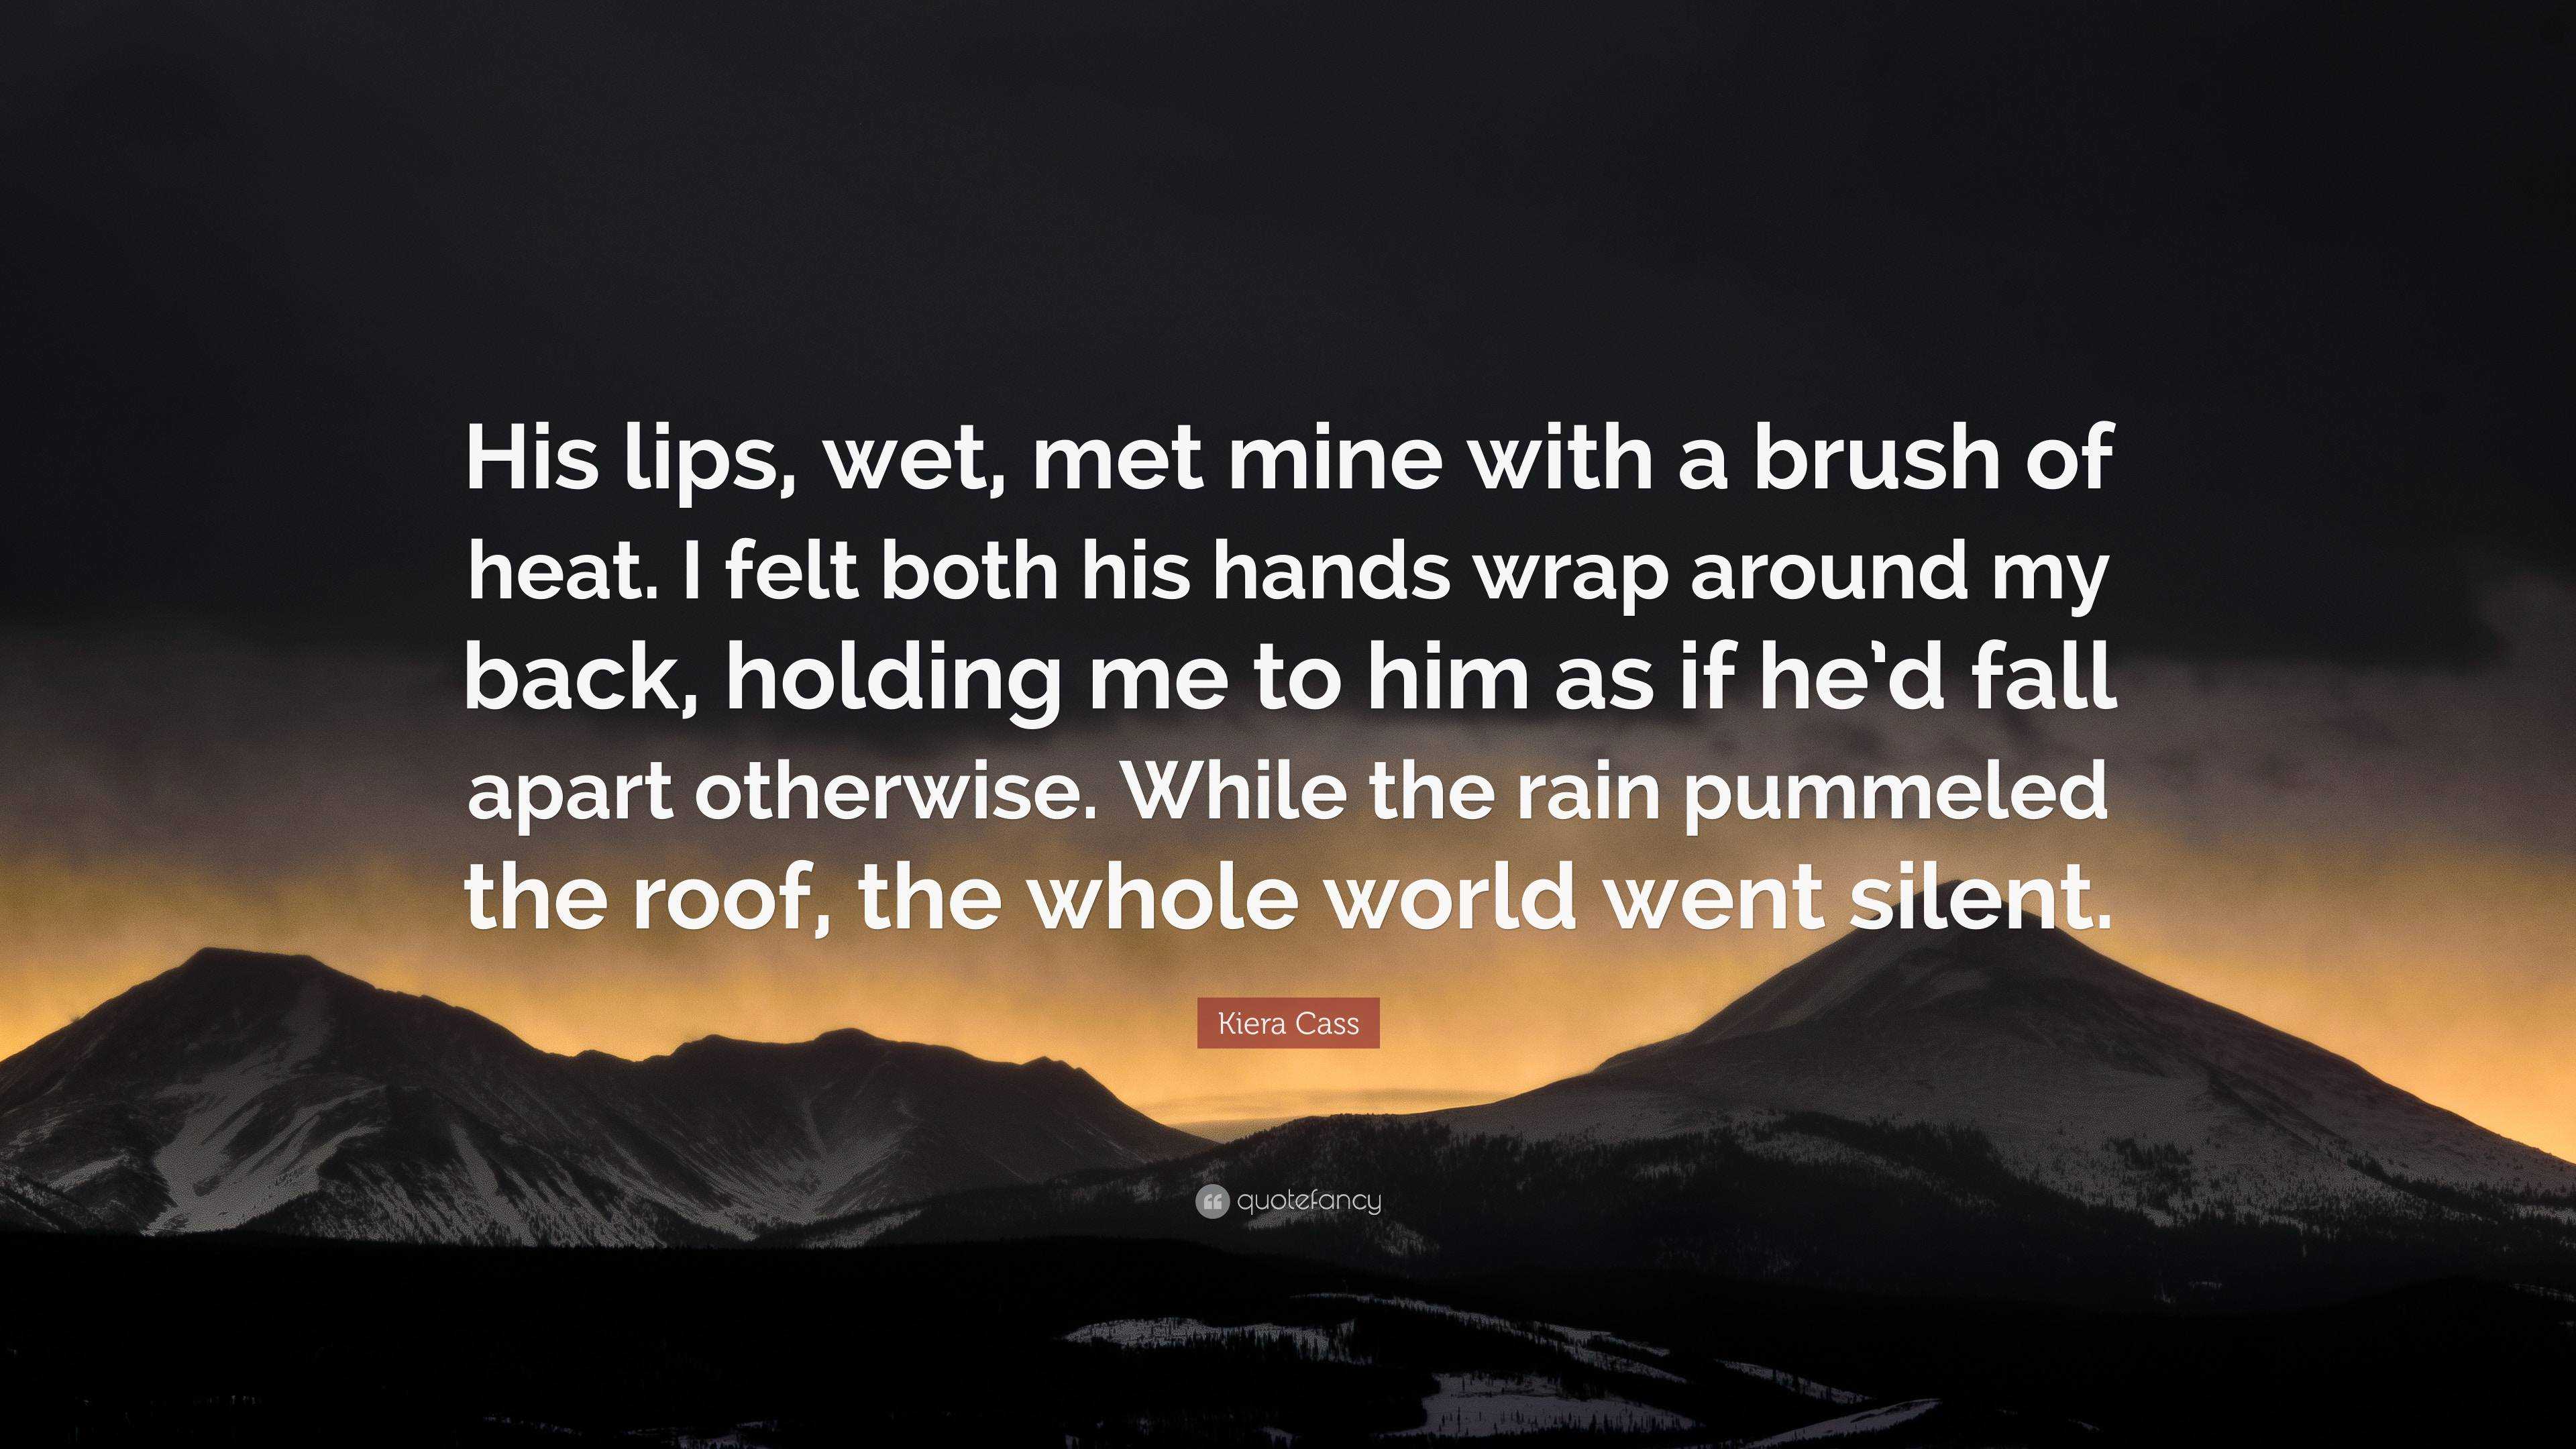 https://quotefancy.com/media/wallpaper/3840x2160/6909671-Kiera-Cass-Quote-His-lips-wet-met-mine-with-a-brush-of-heat-I-felt.jpg